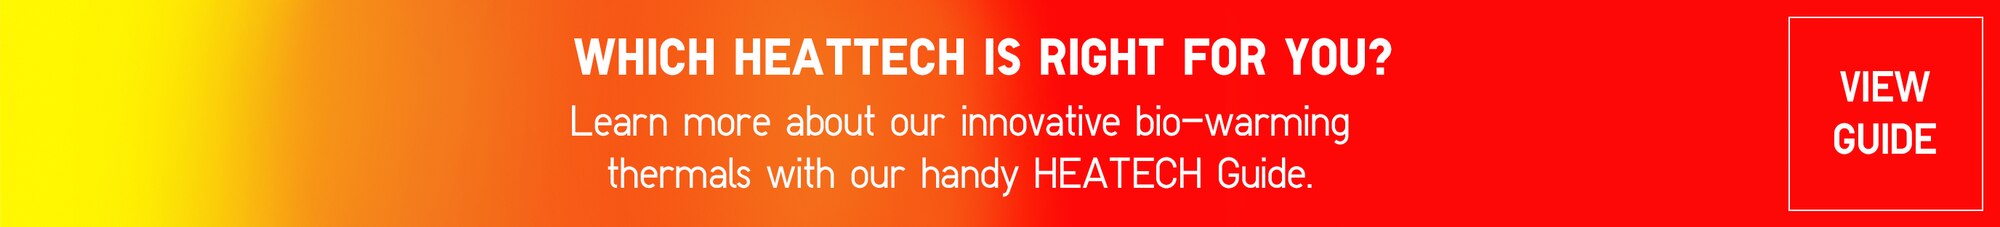 Heattech banner